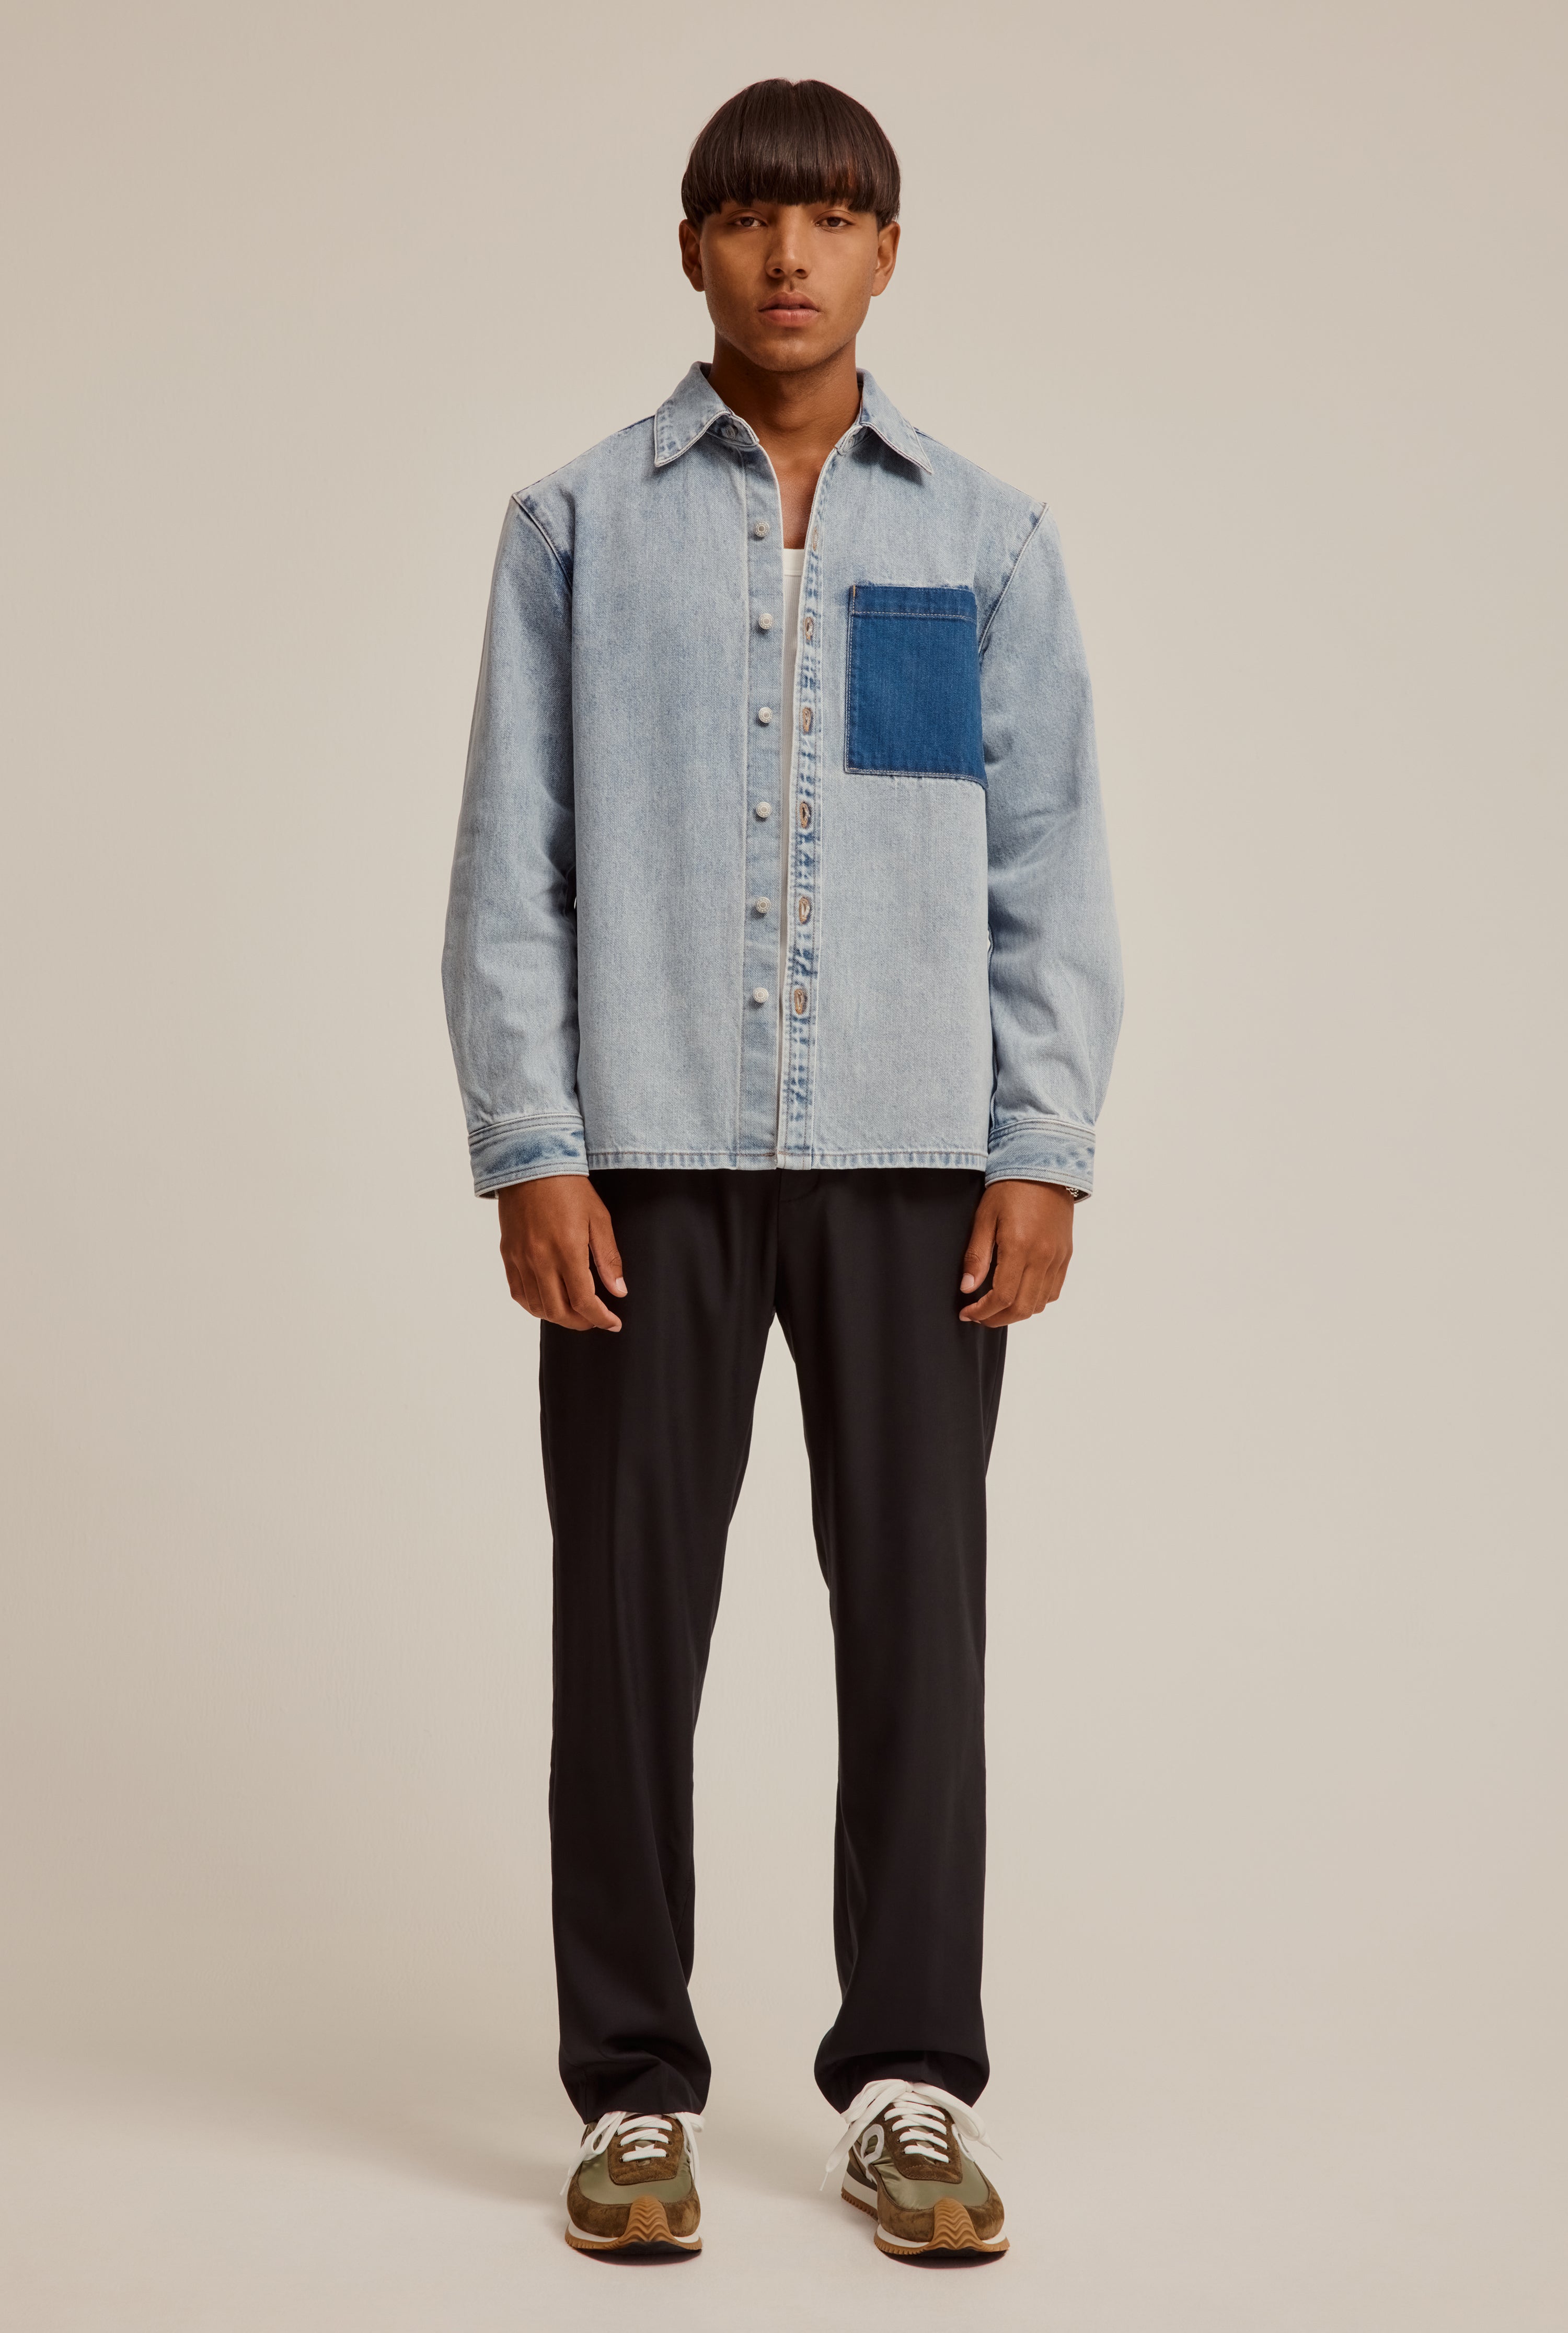 Contrast Denim Jacket in Light/Dark Blue | Venroy | Premium Leisurewear ...